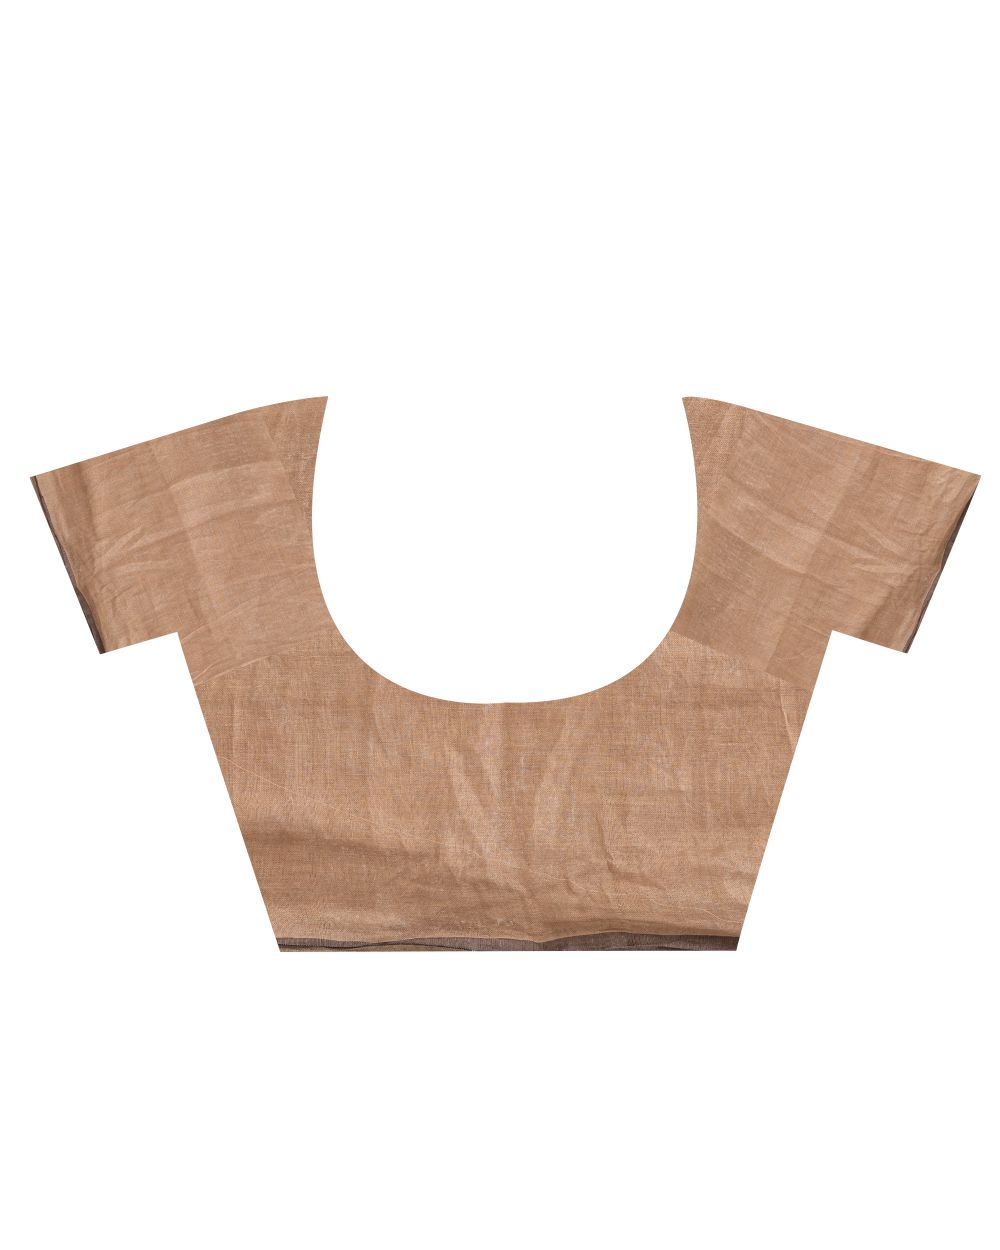 Brown tan handwoven linen bengal saree